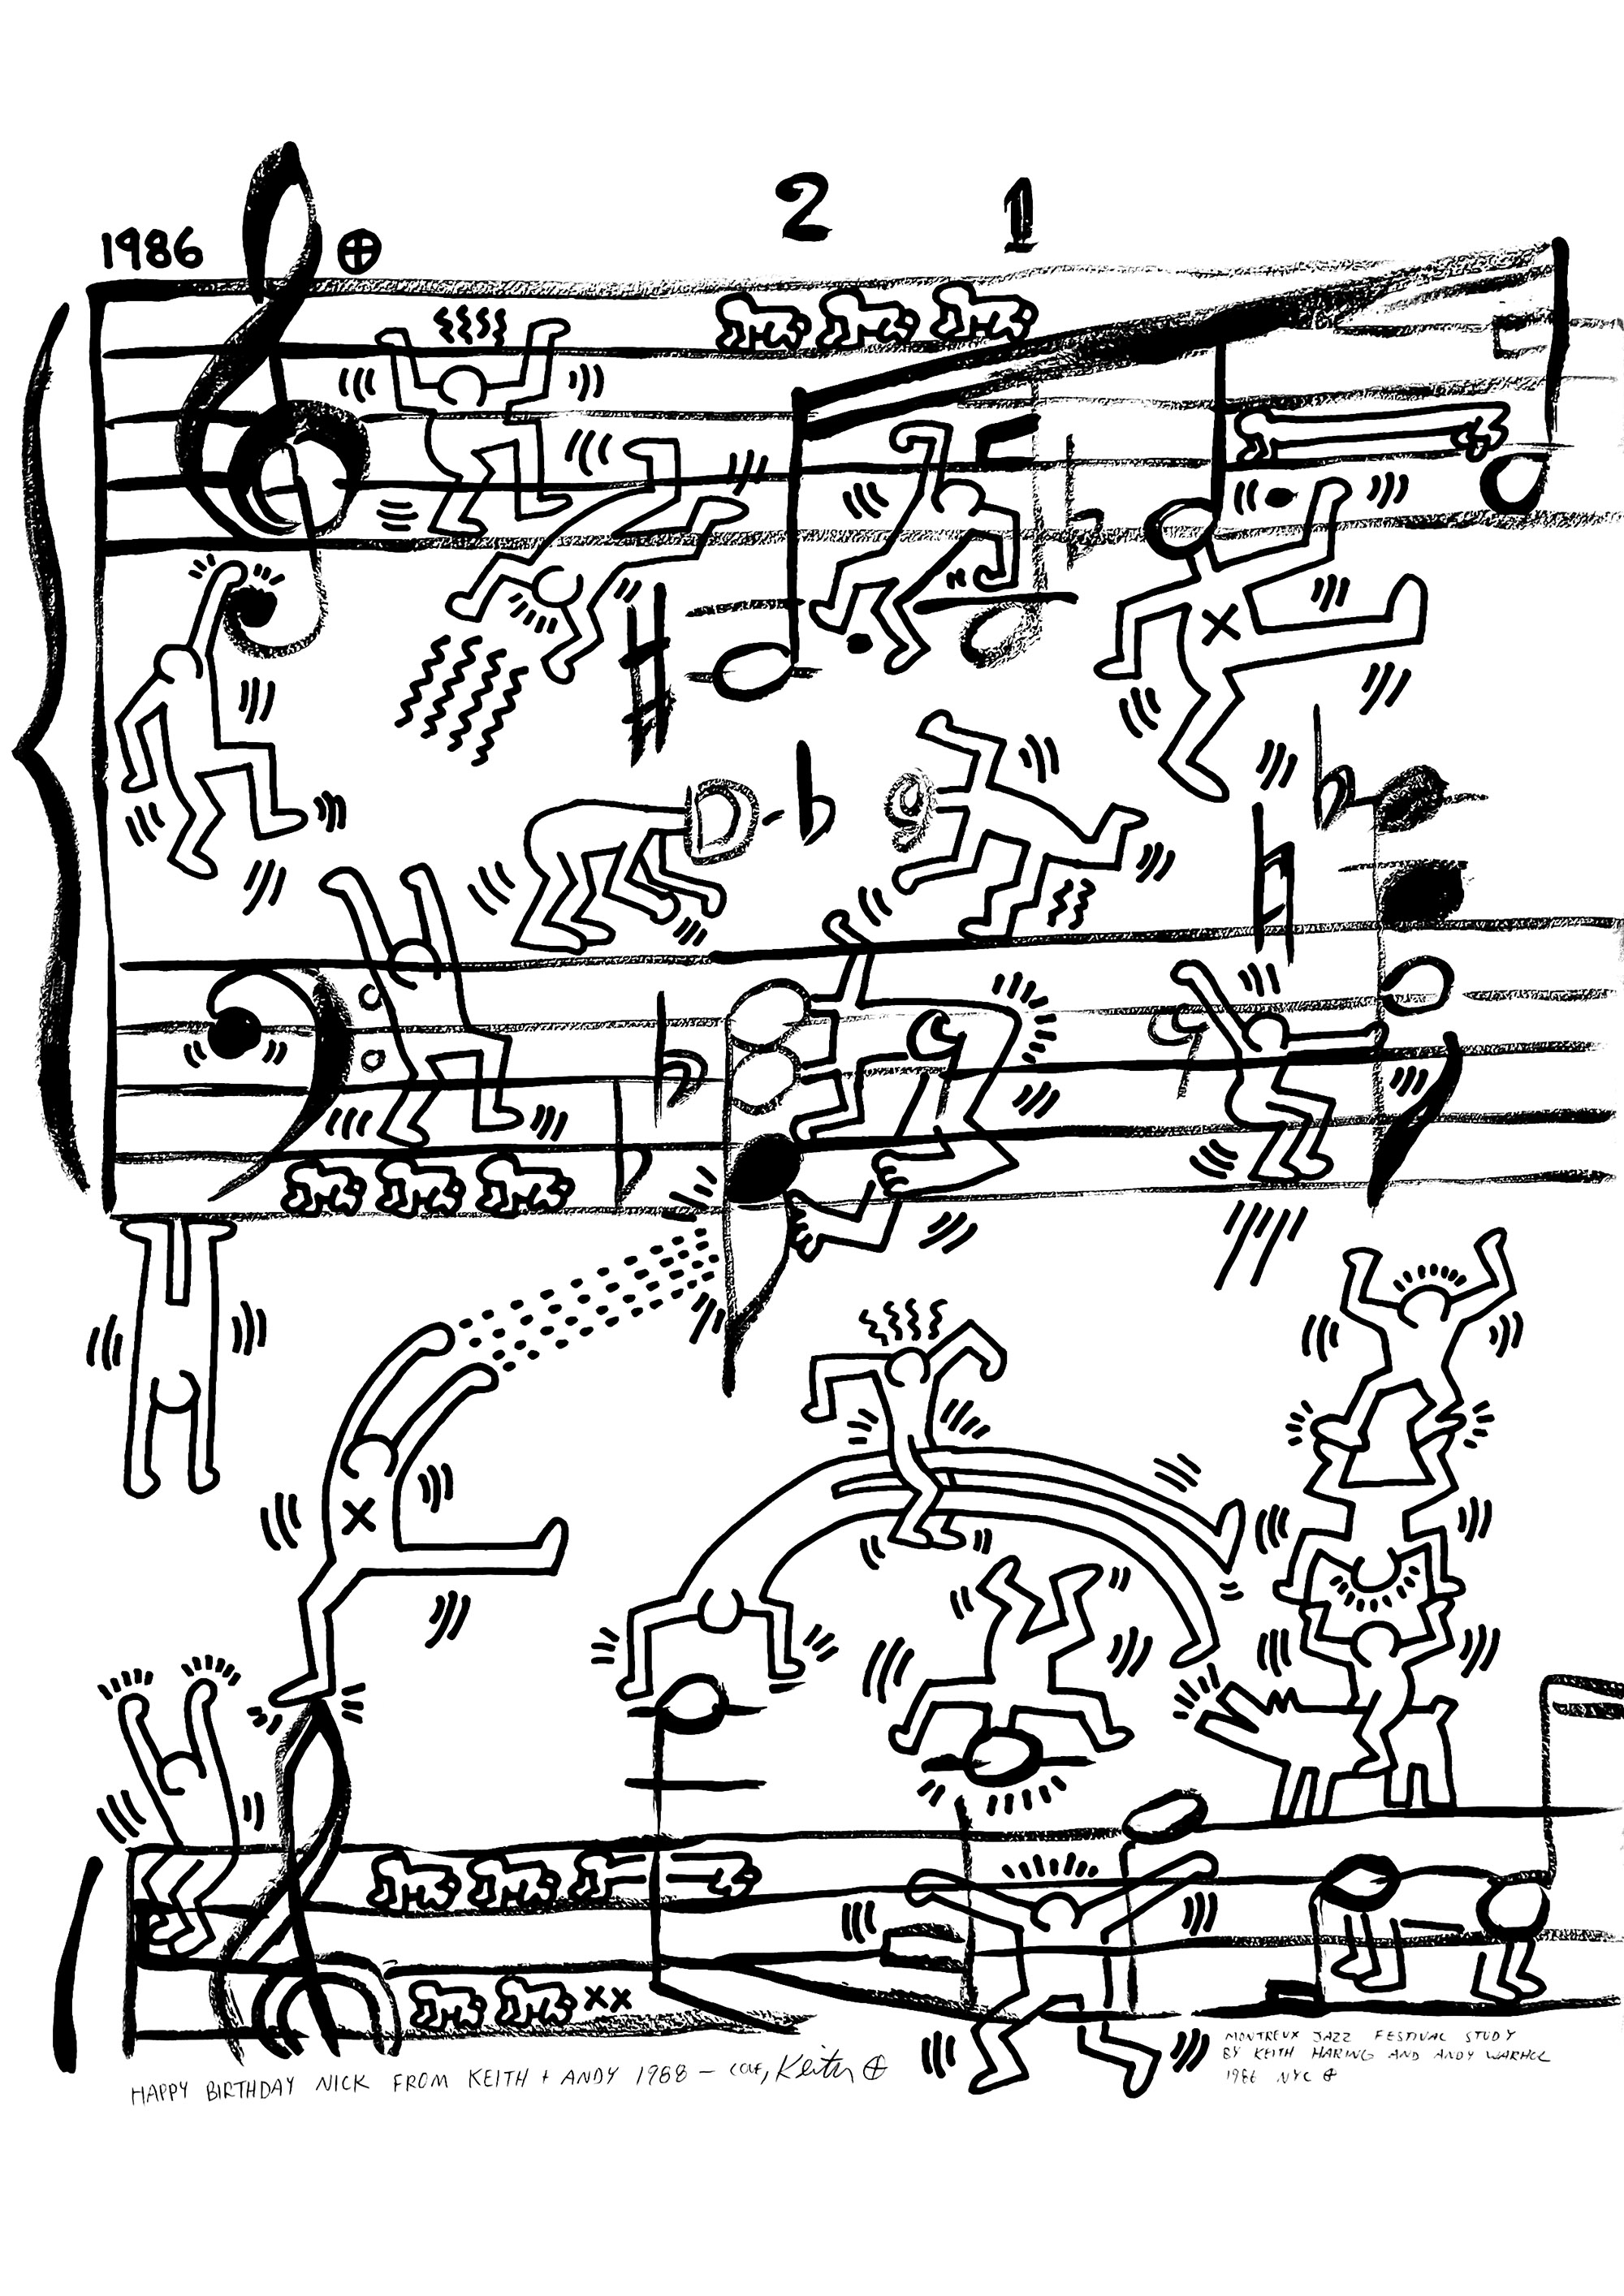 Projet d'affiche pour le Festival de Jazz de Montreux par Andy Warhol et Keith Haring réalisé en 1986. L'amitié de Keith Haring avec Andy Warhol a profondément marqué son travail. Après leur première rencontre à la Tony Shafrazi Gallery en 1984, Keith Haring fait découvrir à Andy Warhol la scène créative de Manhattan, un environnement qui continue d'inspirer le père fondateur du Pop Art tout au long de sa carrière.